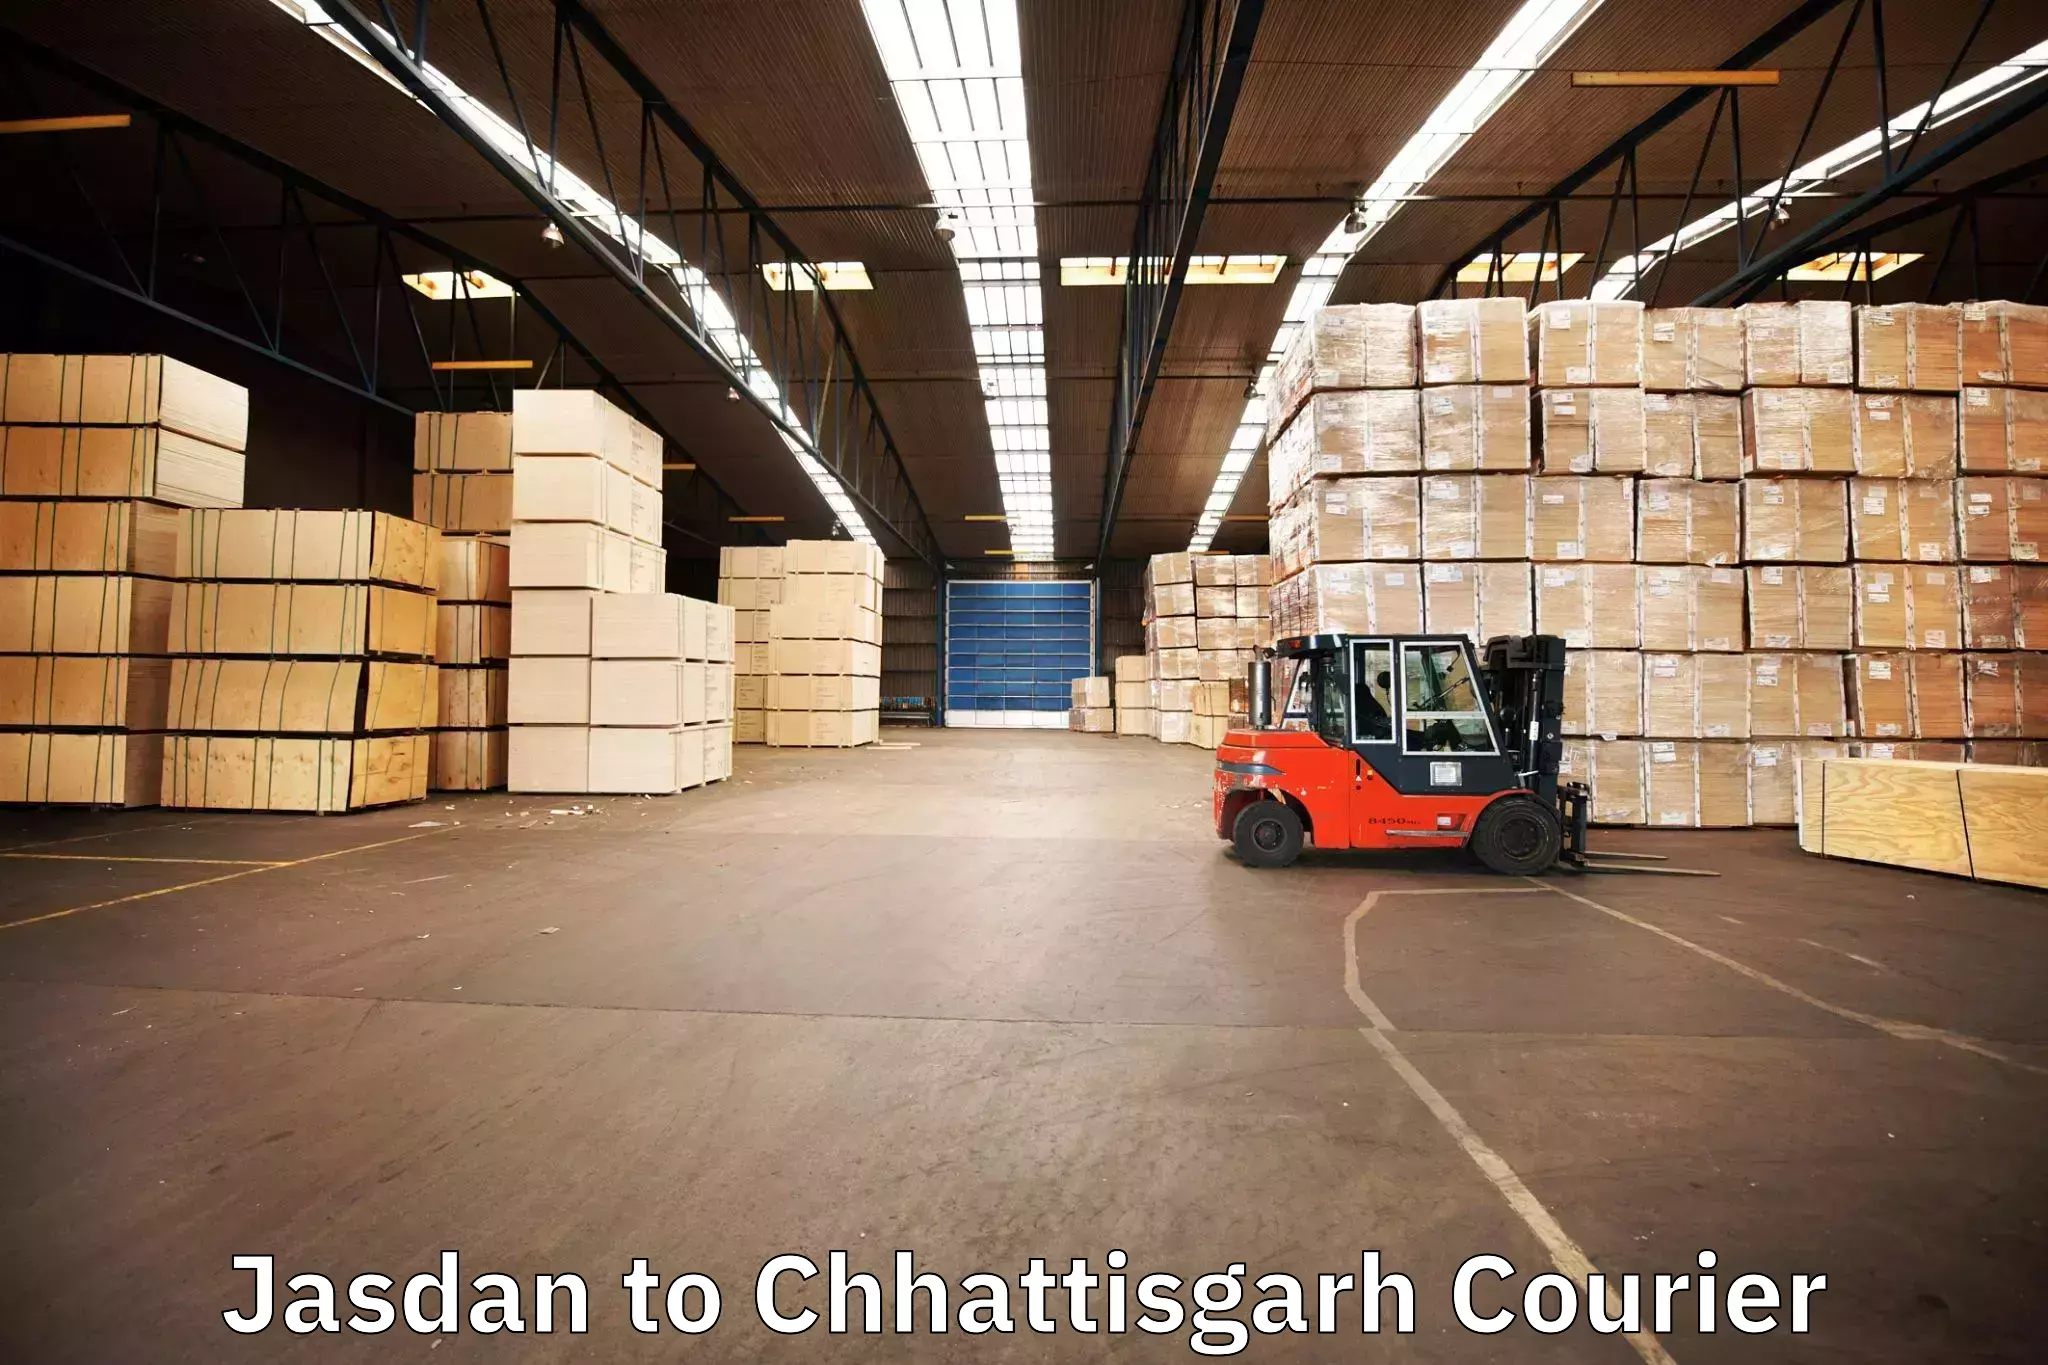 Furniture delivery service Jasdan to Chhattisgarh